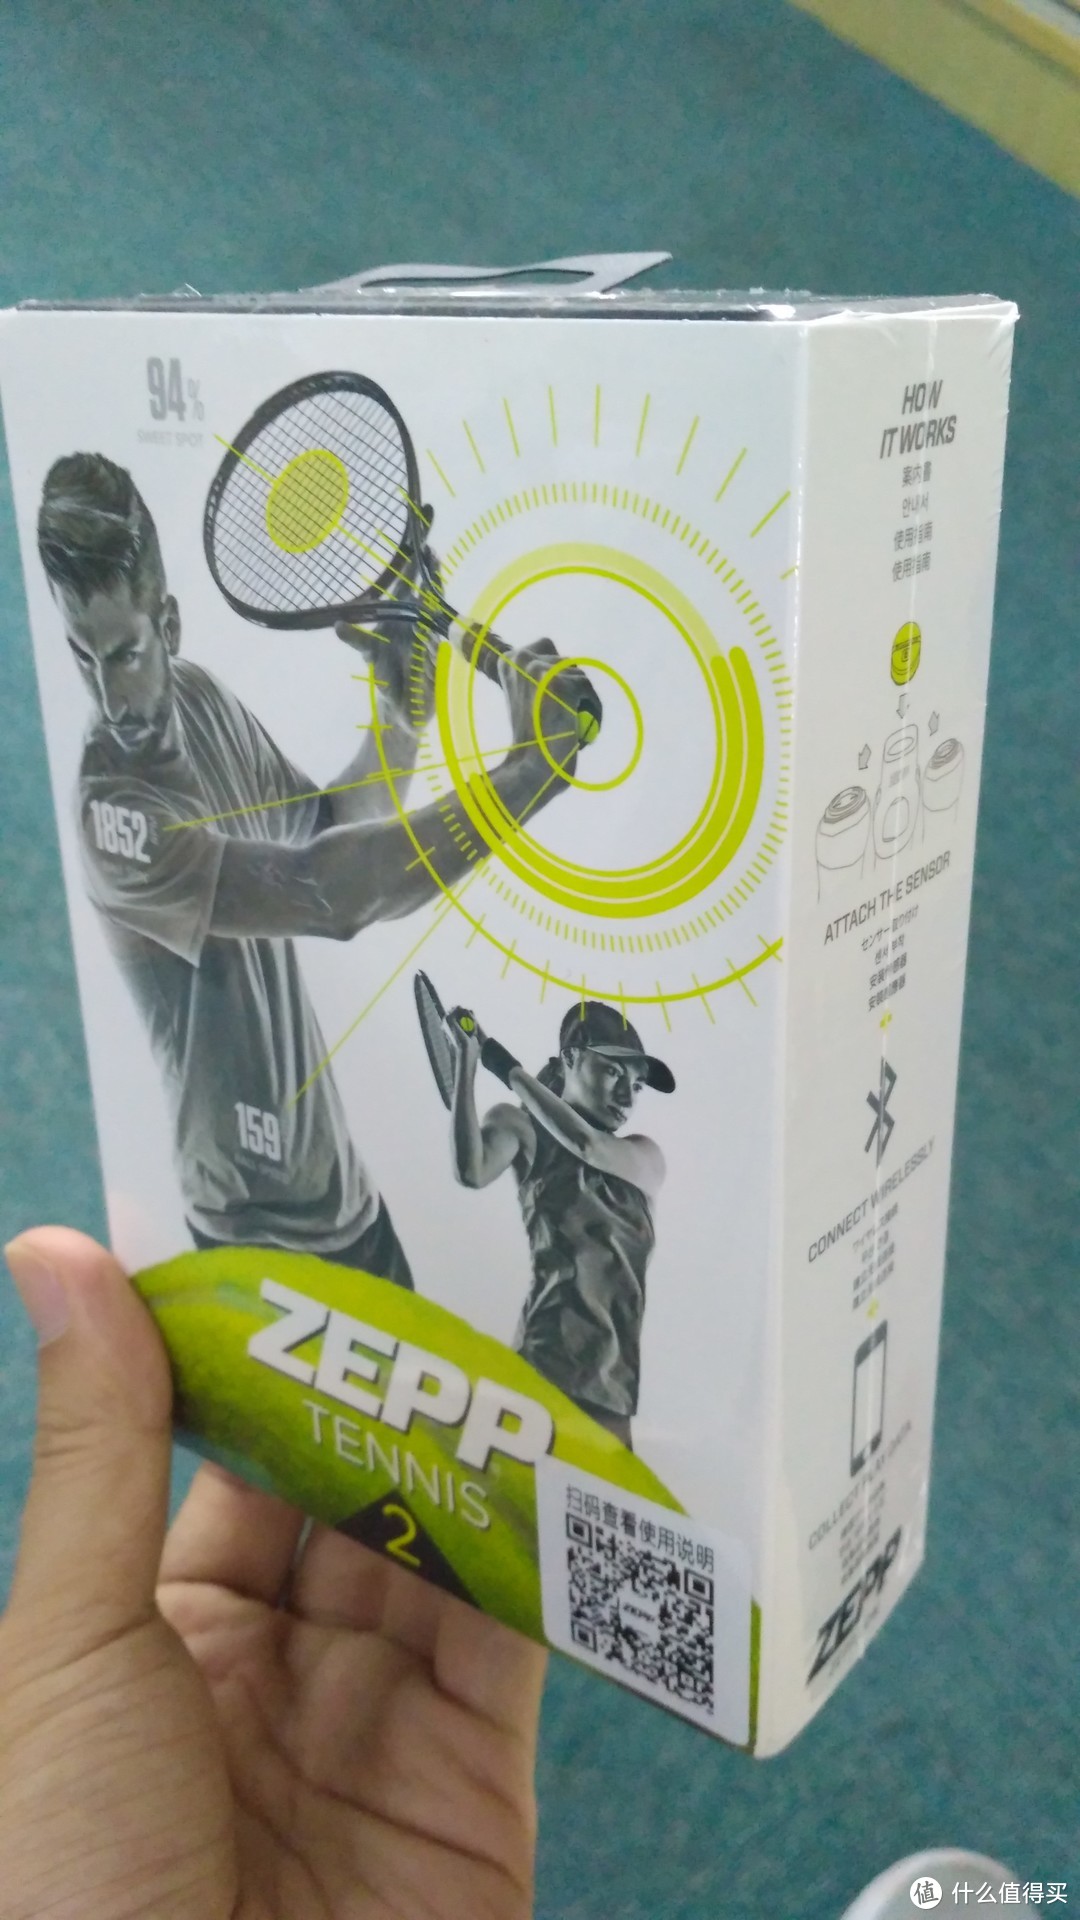 网球提高之路--ZEPP Tennis 2 网球传感器众测体检及比较 -多图